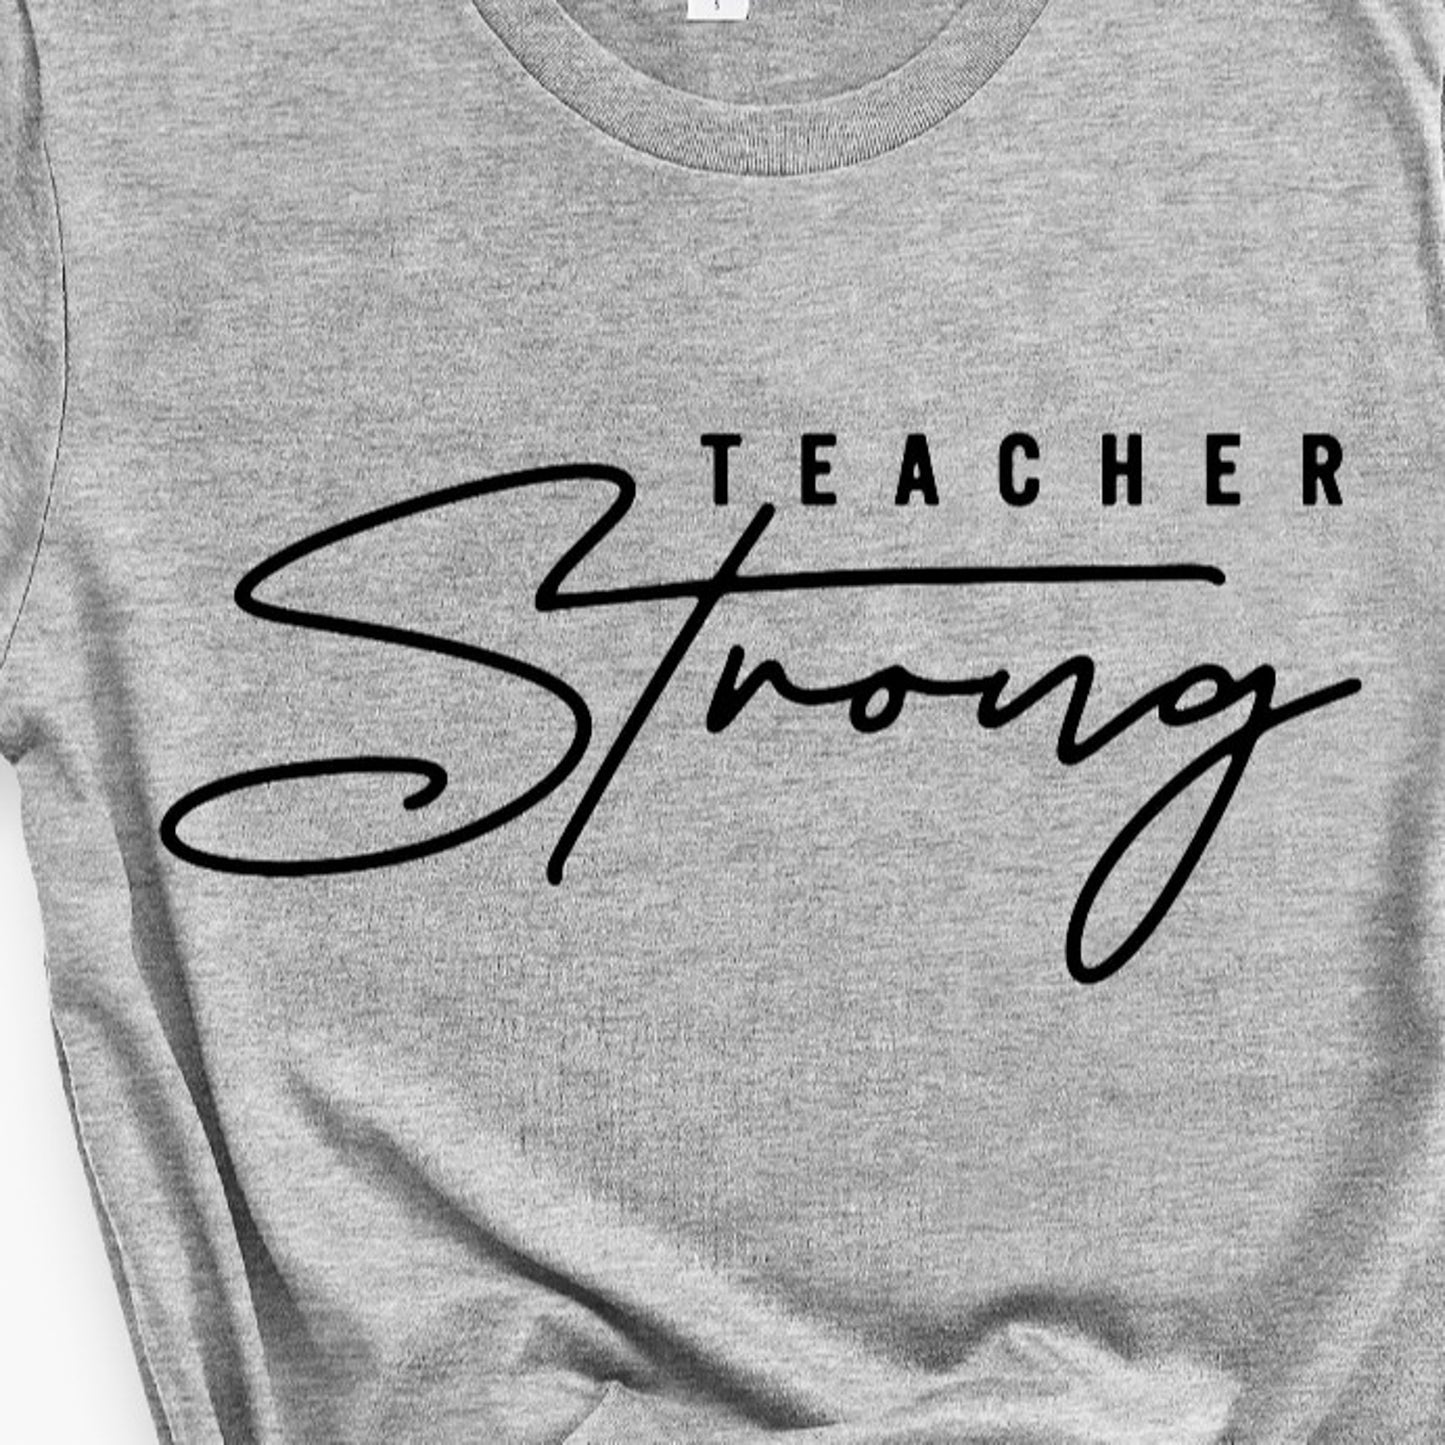 Teacher Strong T-Shirt or Crew Sweatshirt